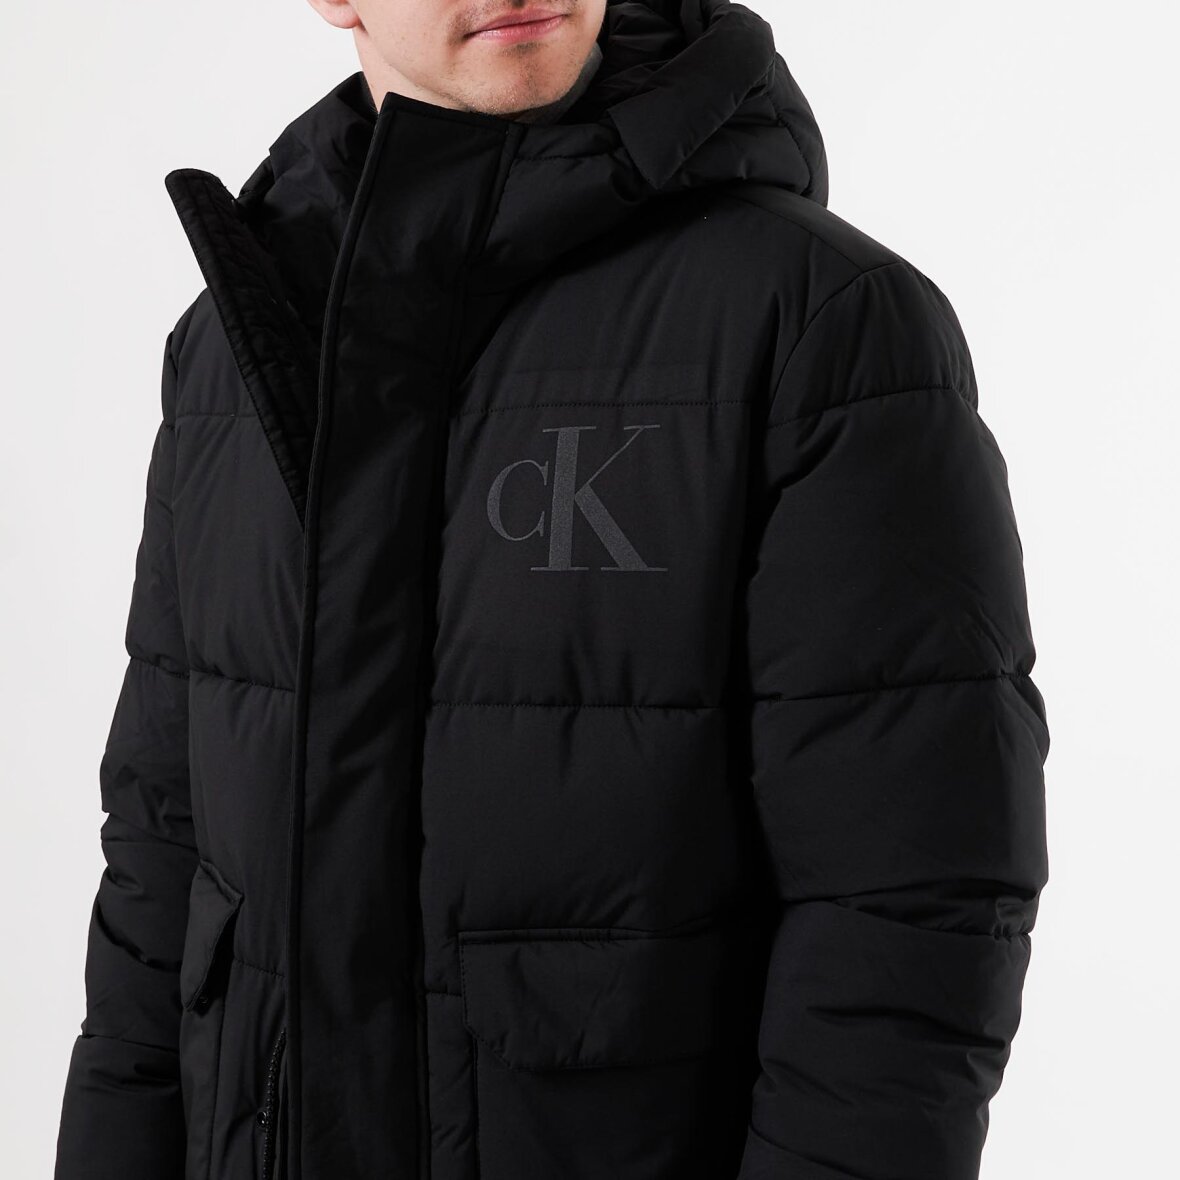 Ck eco jacket fra Calvin Klein Køb nu, leveret morgen!